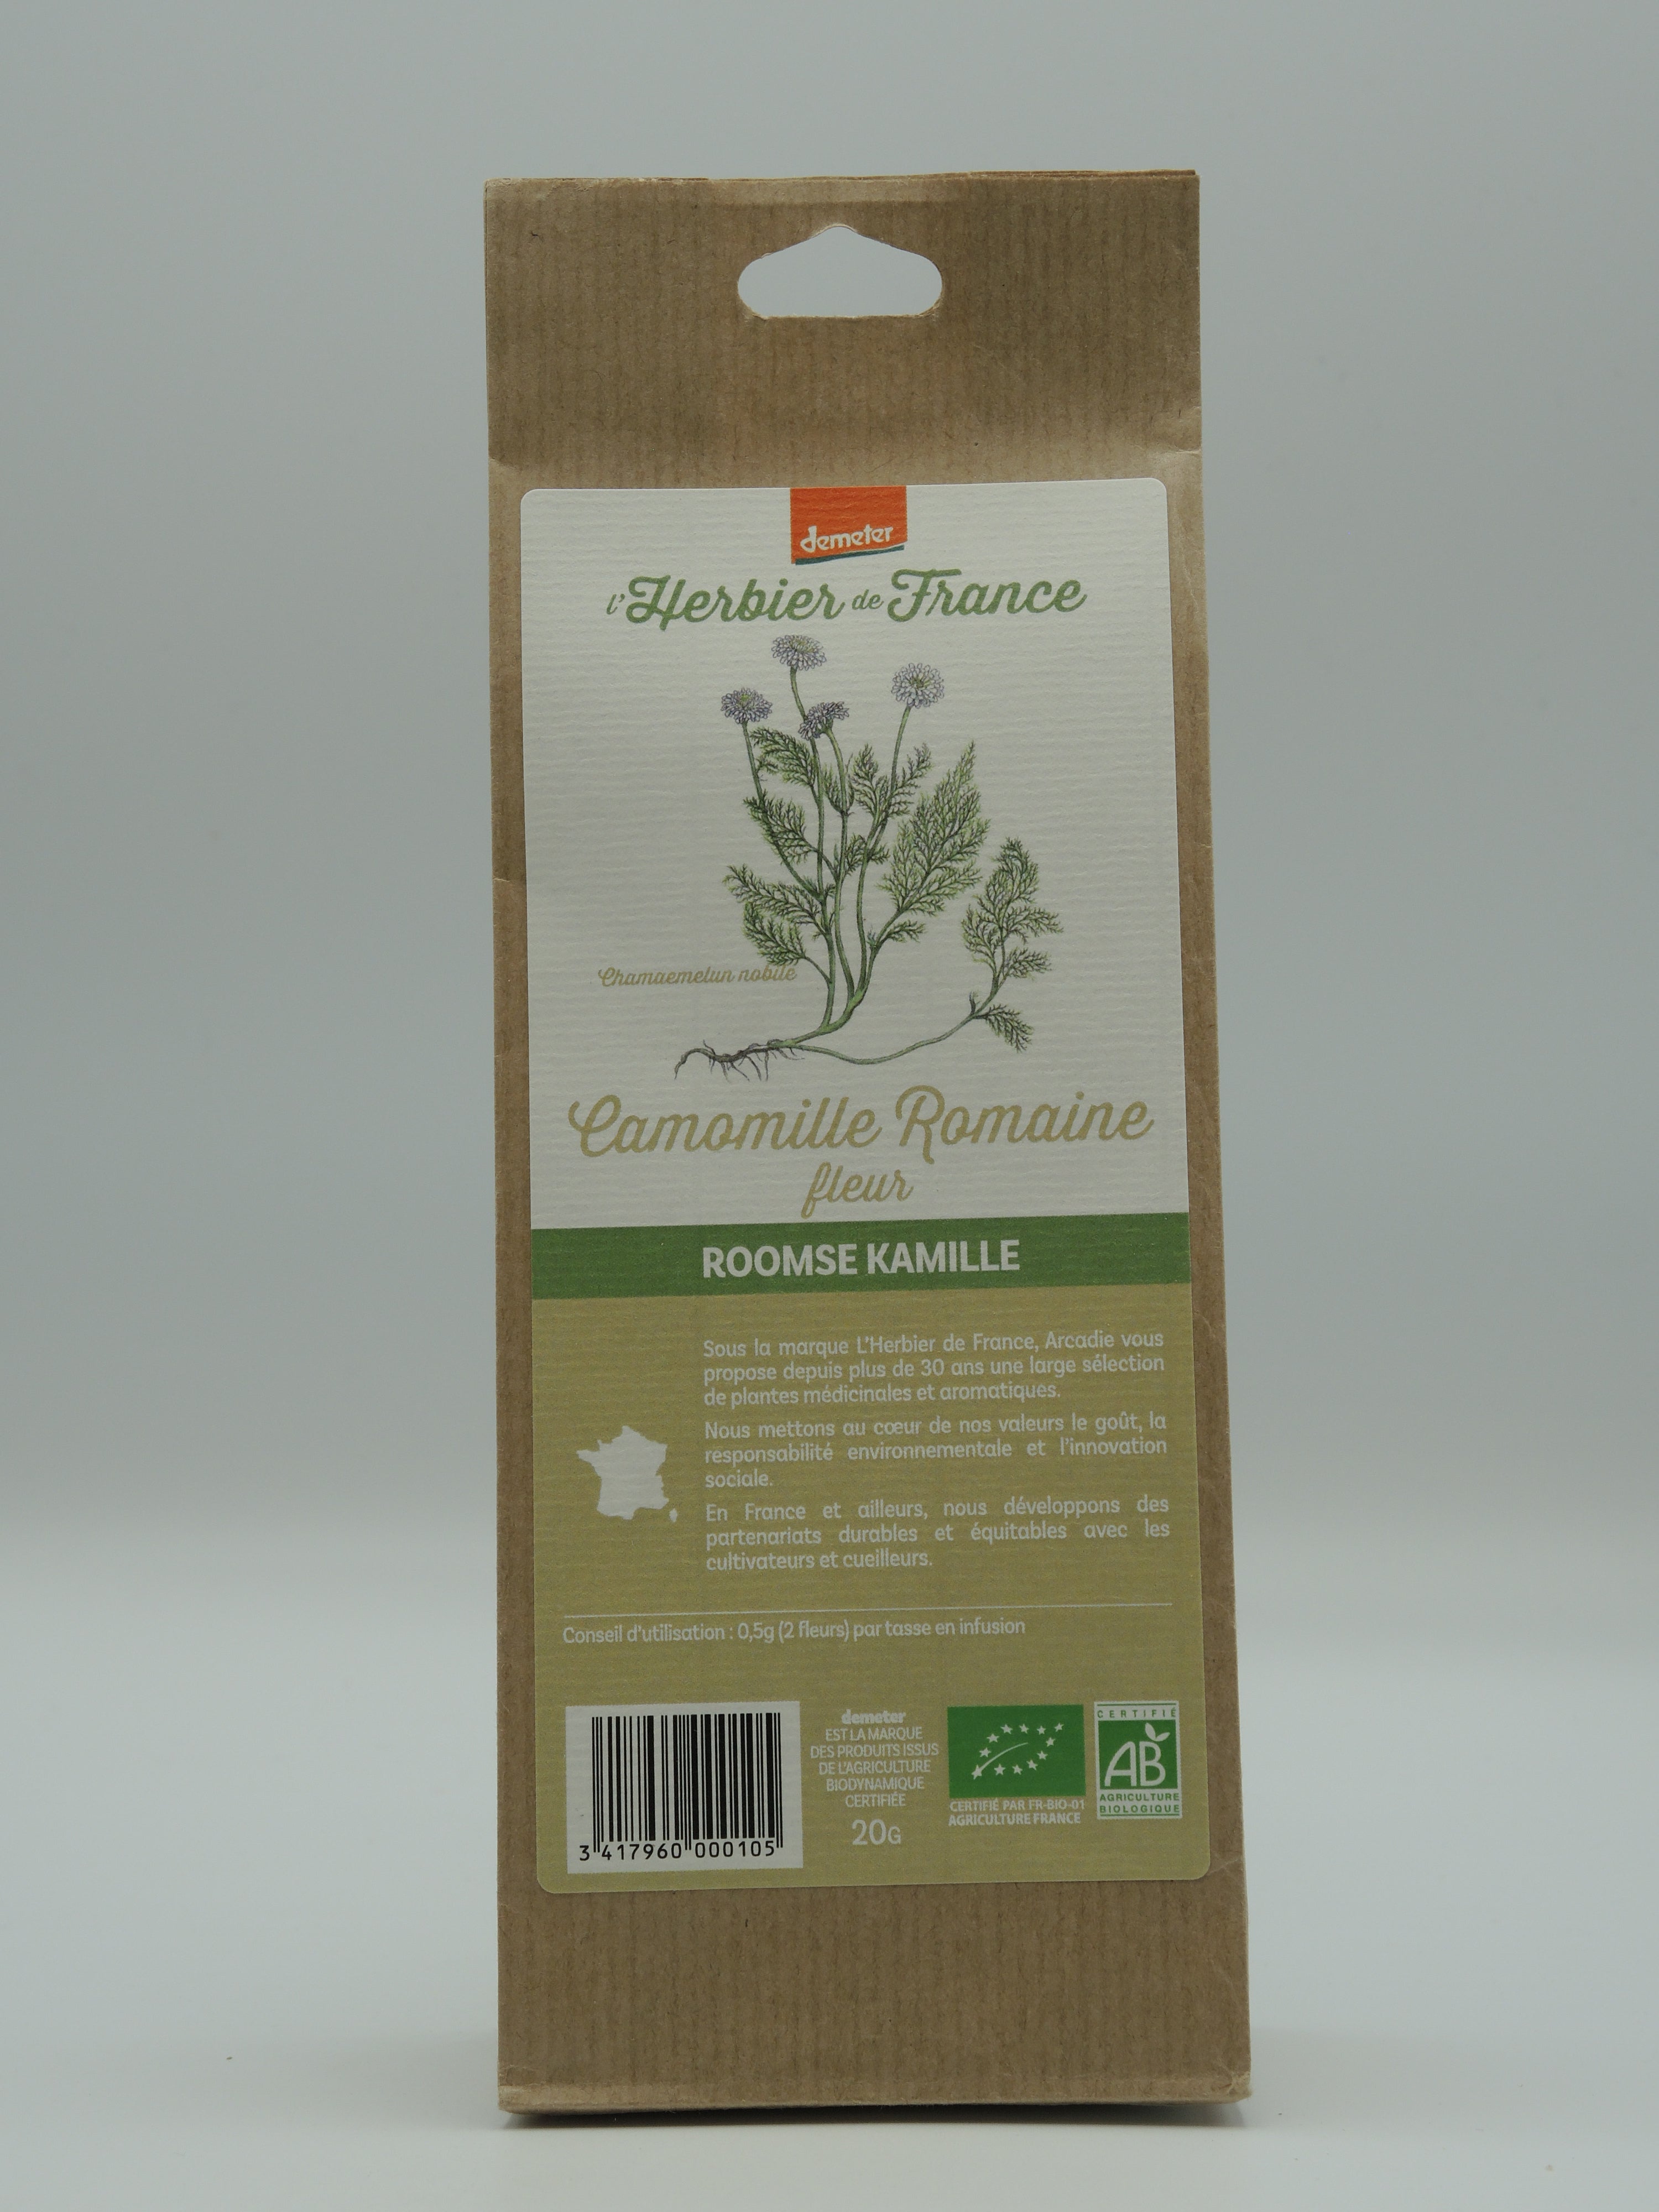 Nigelle graines bio - Cook - Herbier de France